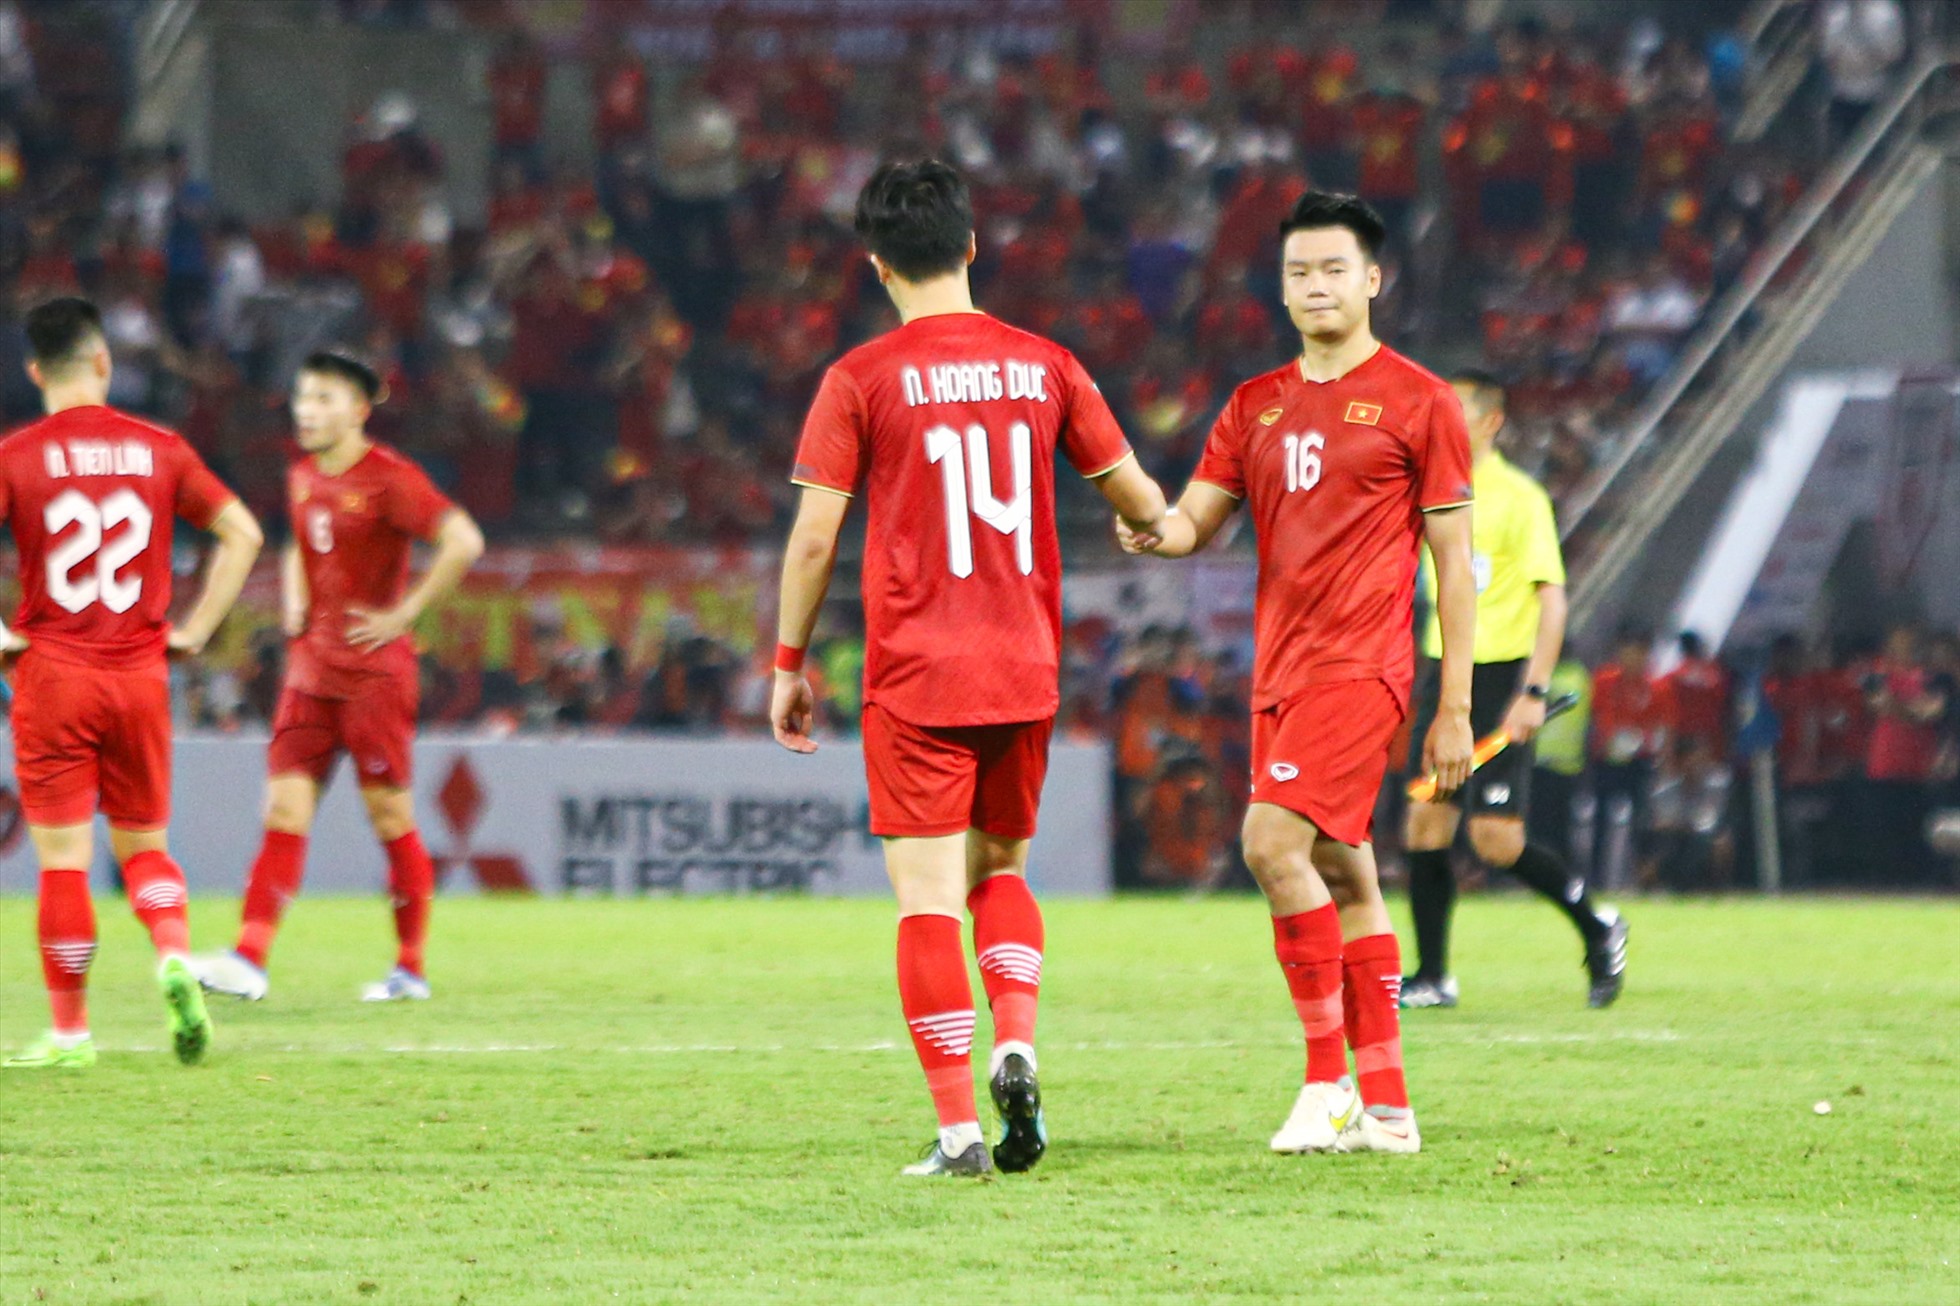 Dù nhận bàn thua nhưng các cầu thủ của đội tuyển Việt Nam vẫn không bỏ cuộc.  Từng cầu thủ thay nhau động viên nhau sau khi trận đấu kết thúc.